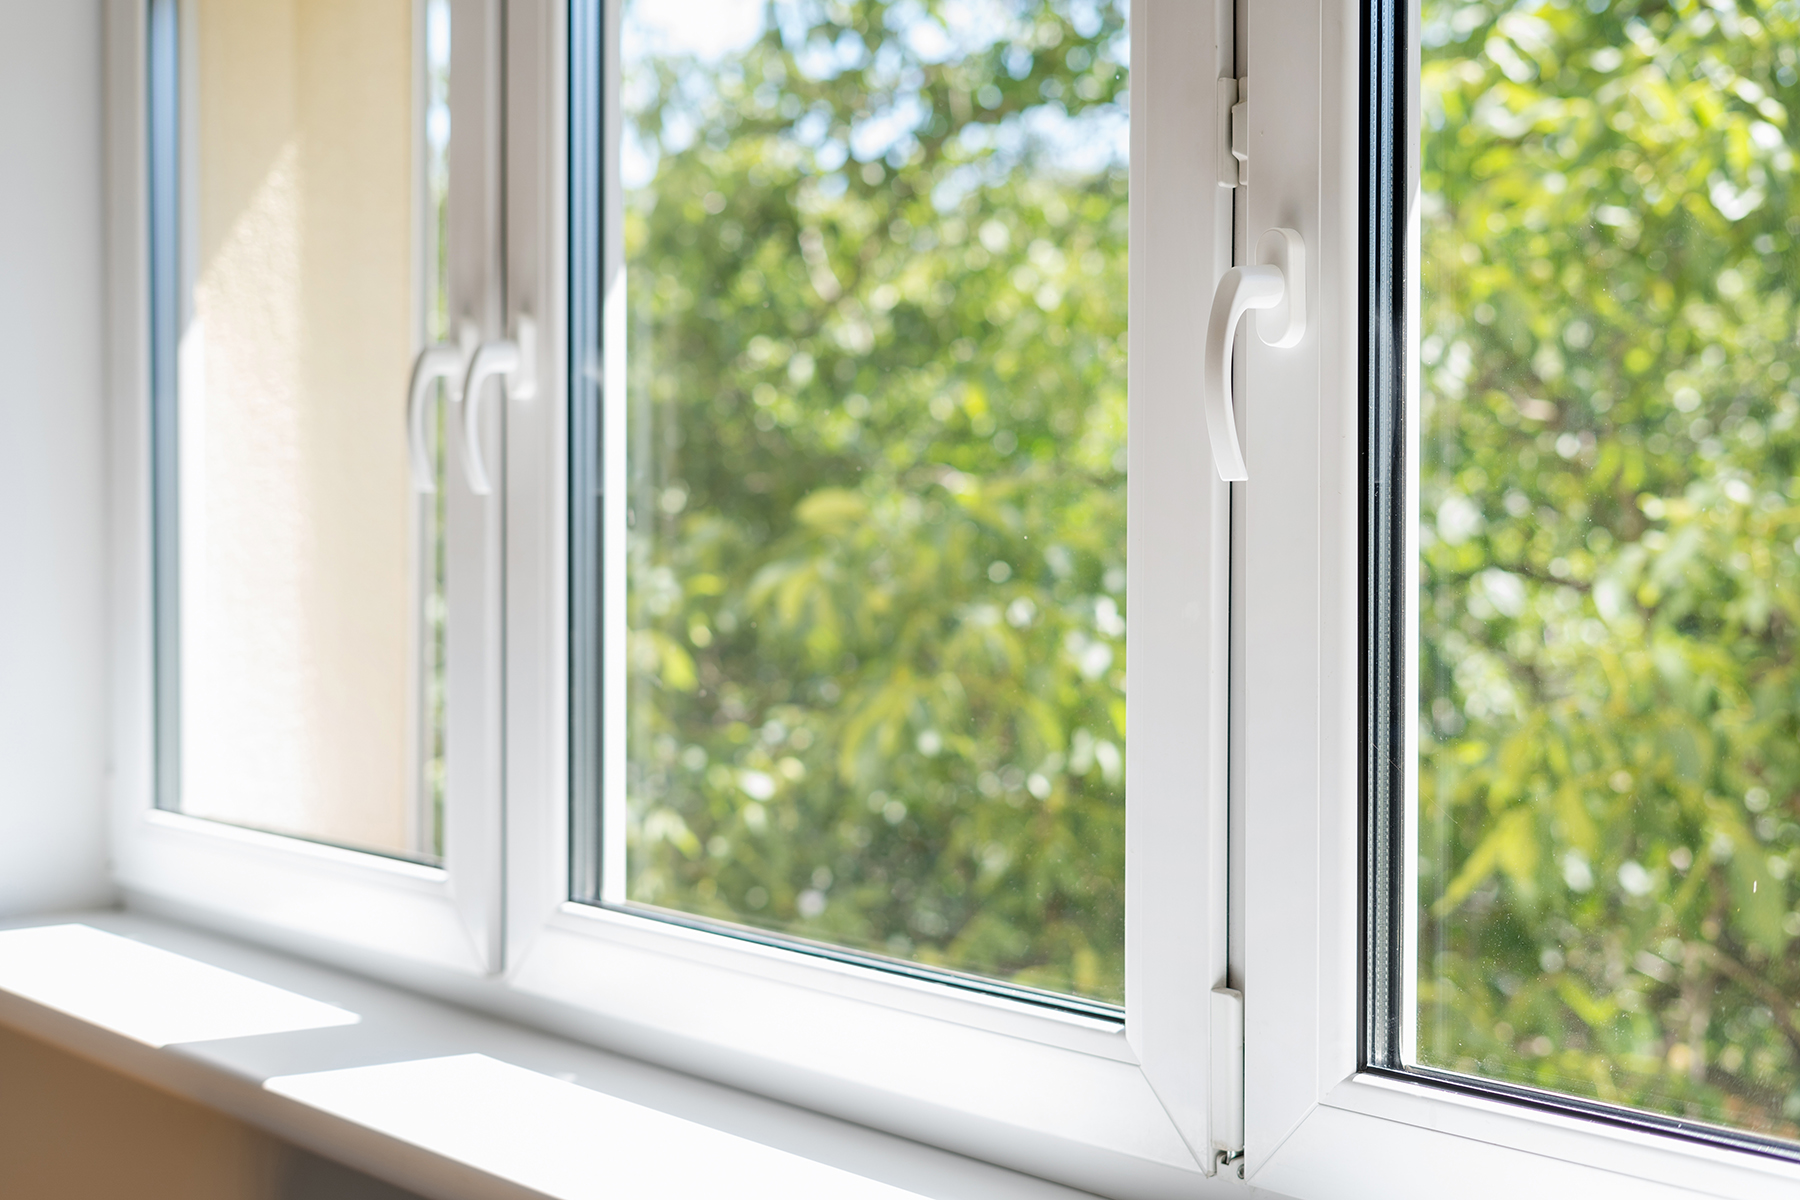 Fenstersanierung mit Würth: Das Produktsortiment beinhaltet alle Produkte zur ordnungsgemäßen Abdichtung des Fensteranschlusses in Bezug auf die ÖNORM B5320 oder zur sicheren Befestigung der Fensterelemente mit dem entsprechenden Montagewerkzeug. Foto: Shutterstock